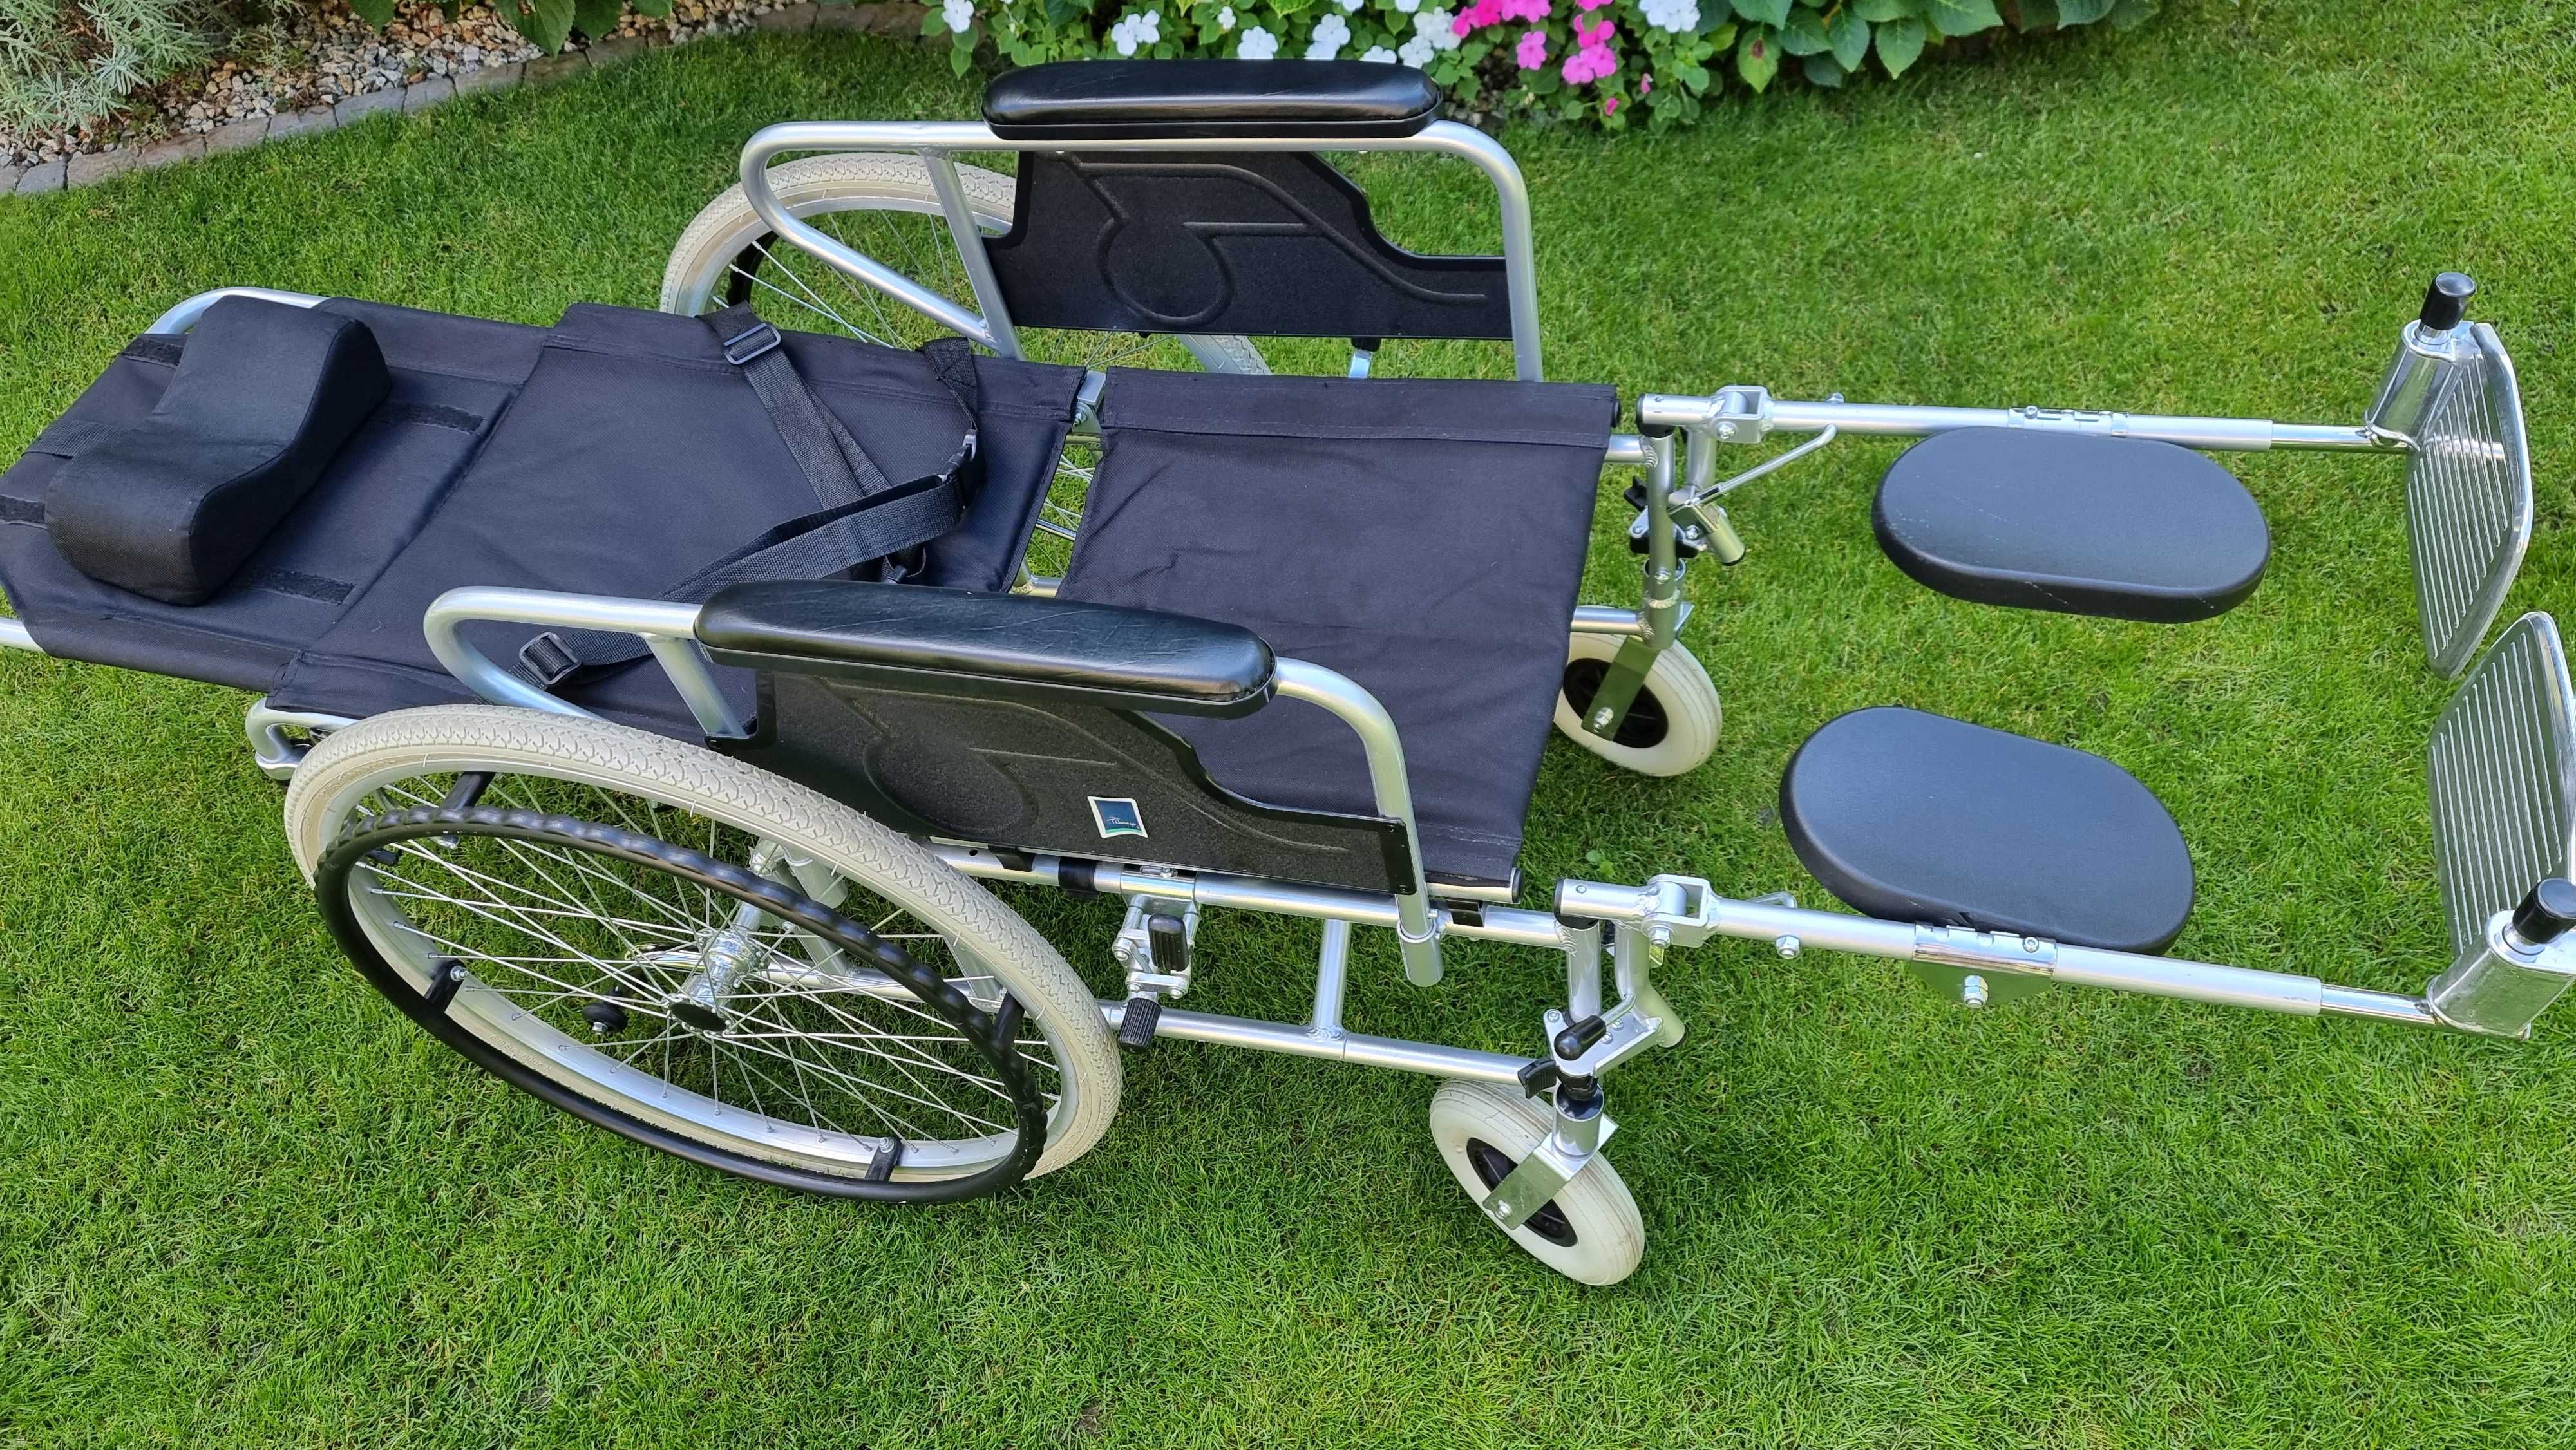 Aluminiowy wózek inwalidzki stabilizujący plecy i głowę  FS 954 LGC